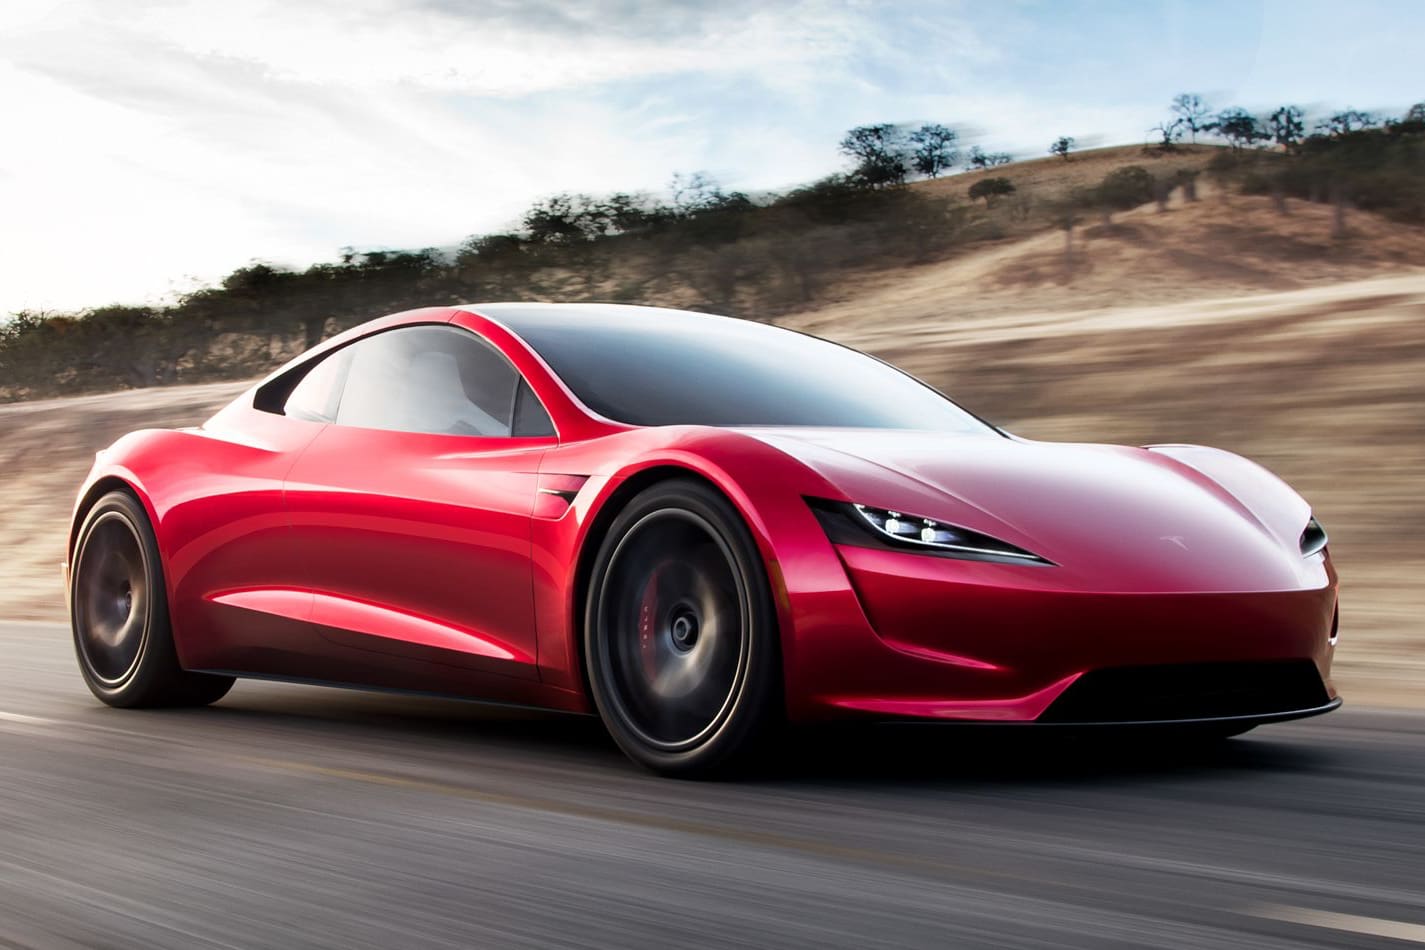 Илон Маск: Новая Tesla Roadster в комплектации SpaceX будет разгоняться до 100 км/ч за 1,1 секунды